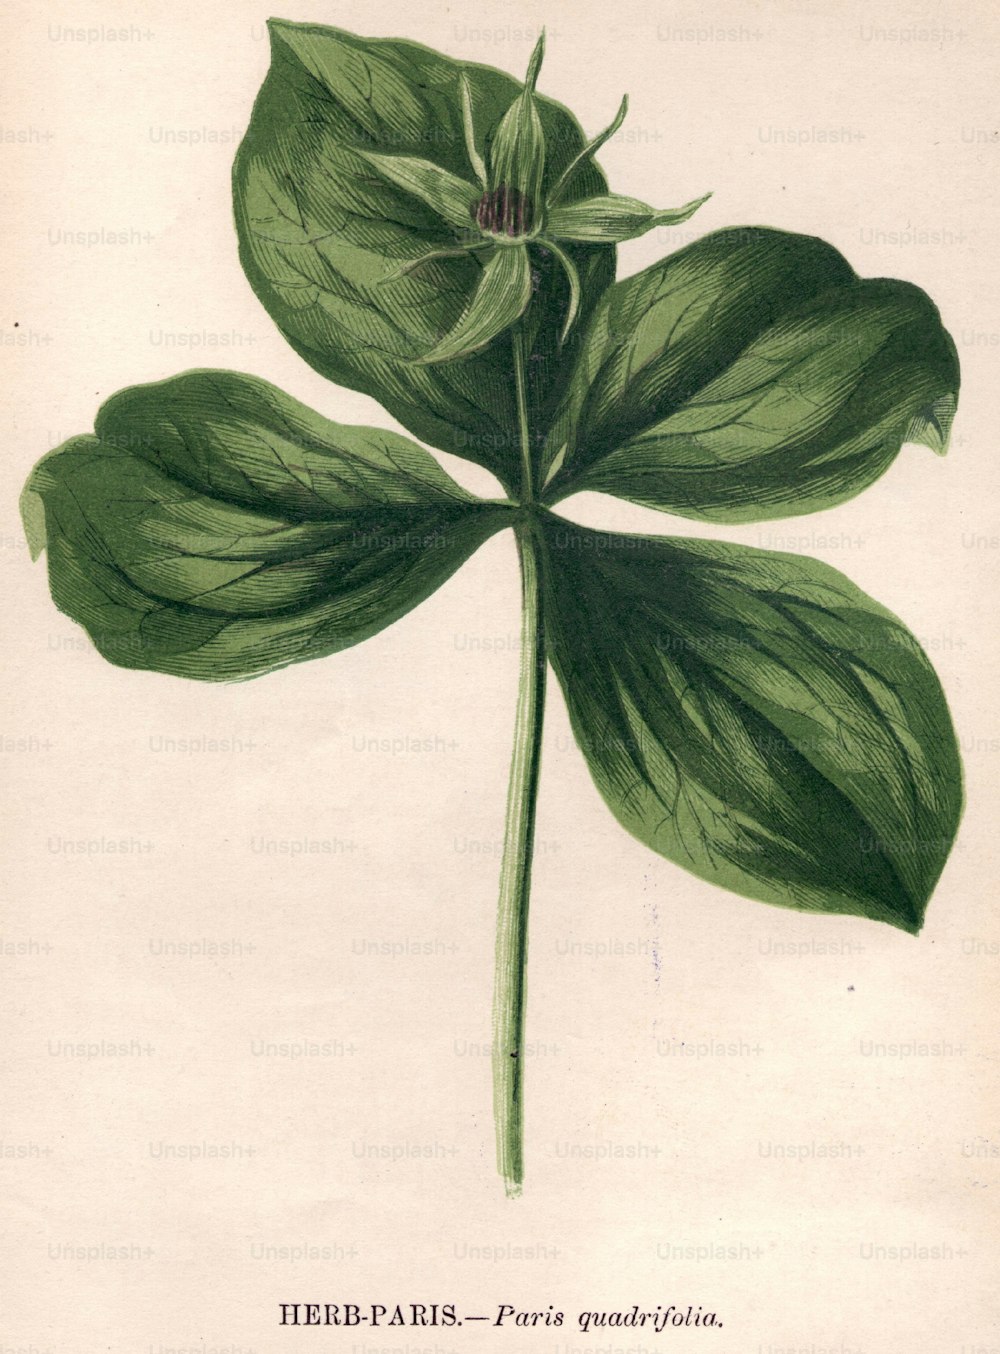 vers 1800 : Paris quadrifolia, ou Paris herbacé (Photo de Hulton Archive/Getty Images)